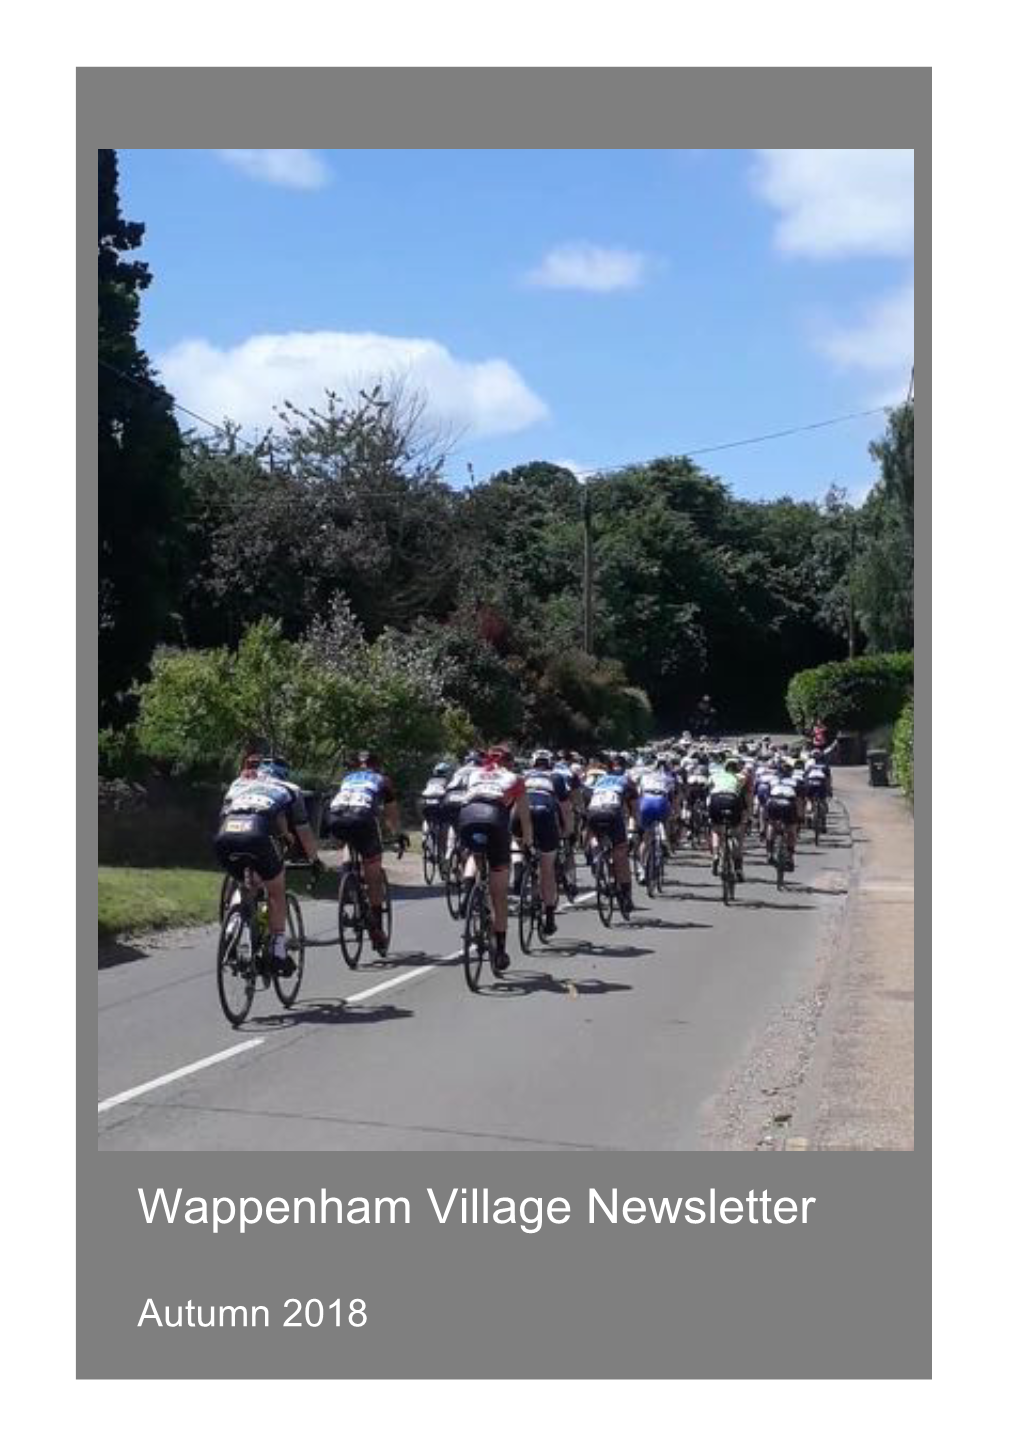 Wappenham Village Newsletter